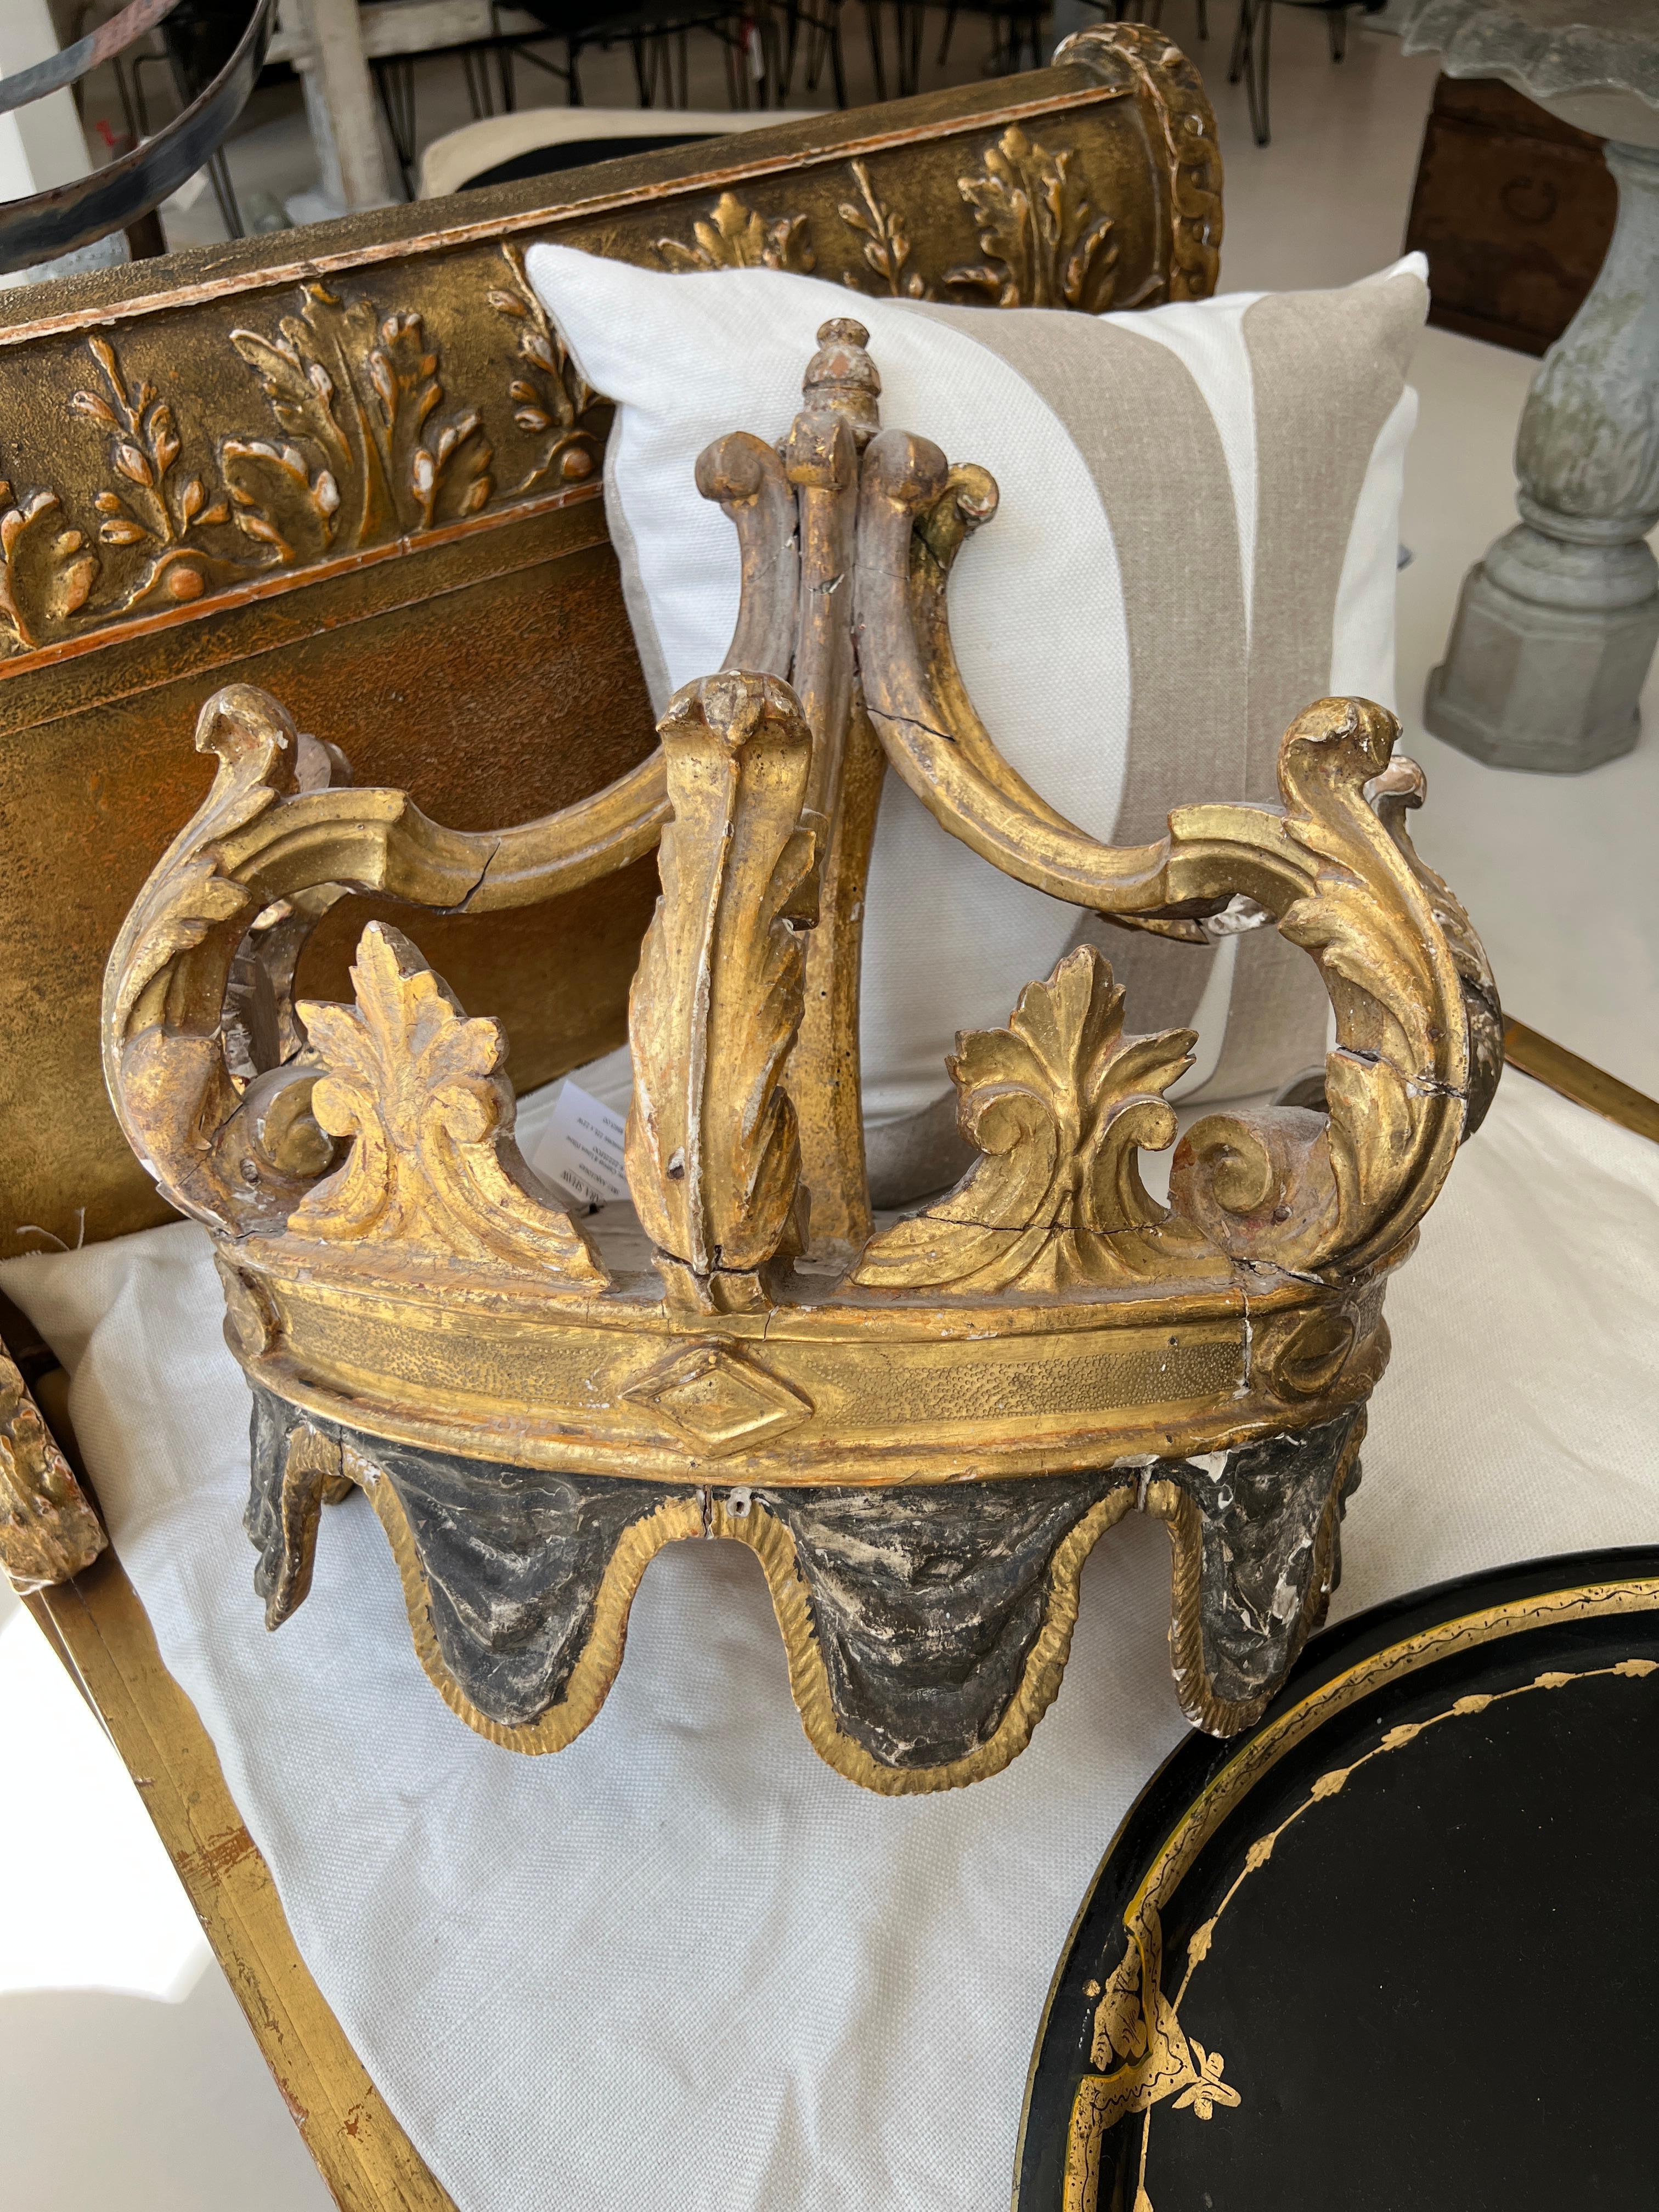 Très rare couronne en bois à monter au-dessus d'un lit avec ajout de rideaux. Cette couronne est dotée d'un effet de drapé sculpté à la base, ce qui lui confère un niveau d'opulence supplémentaire.